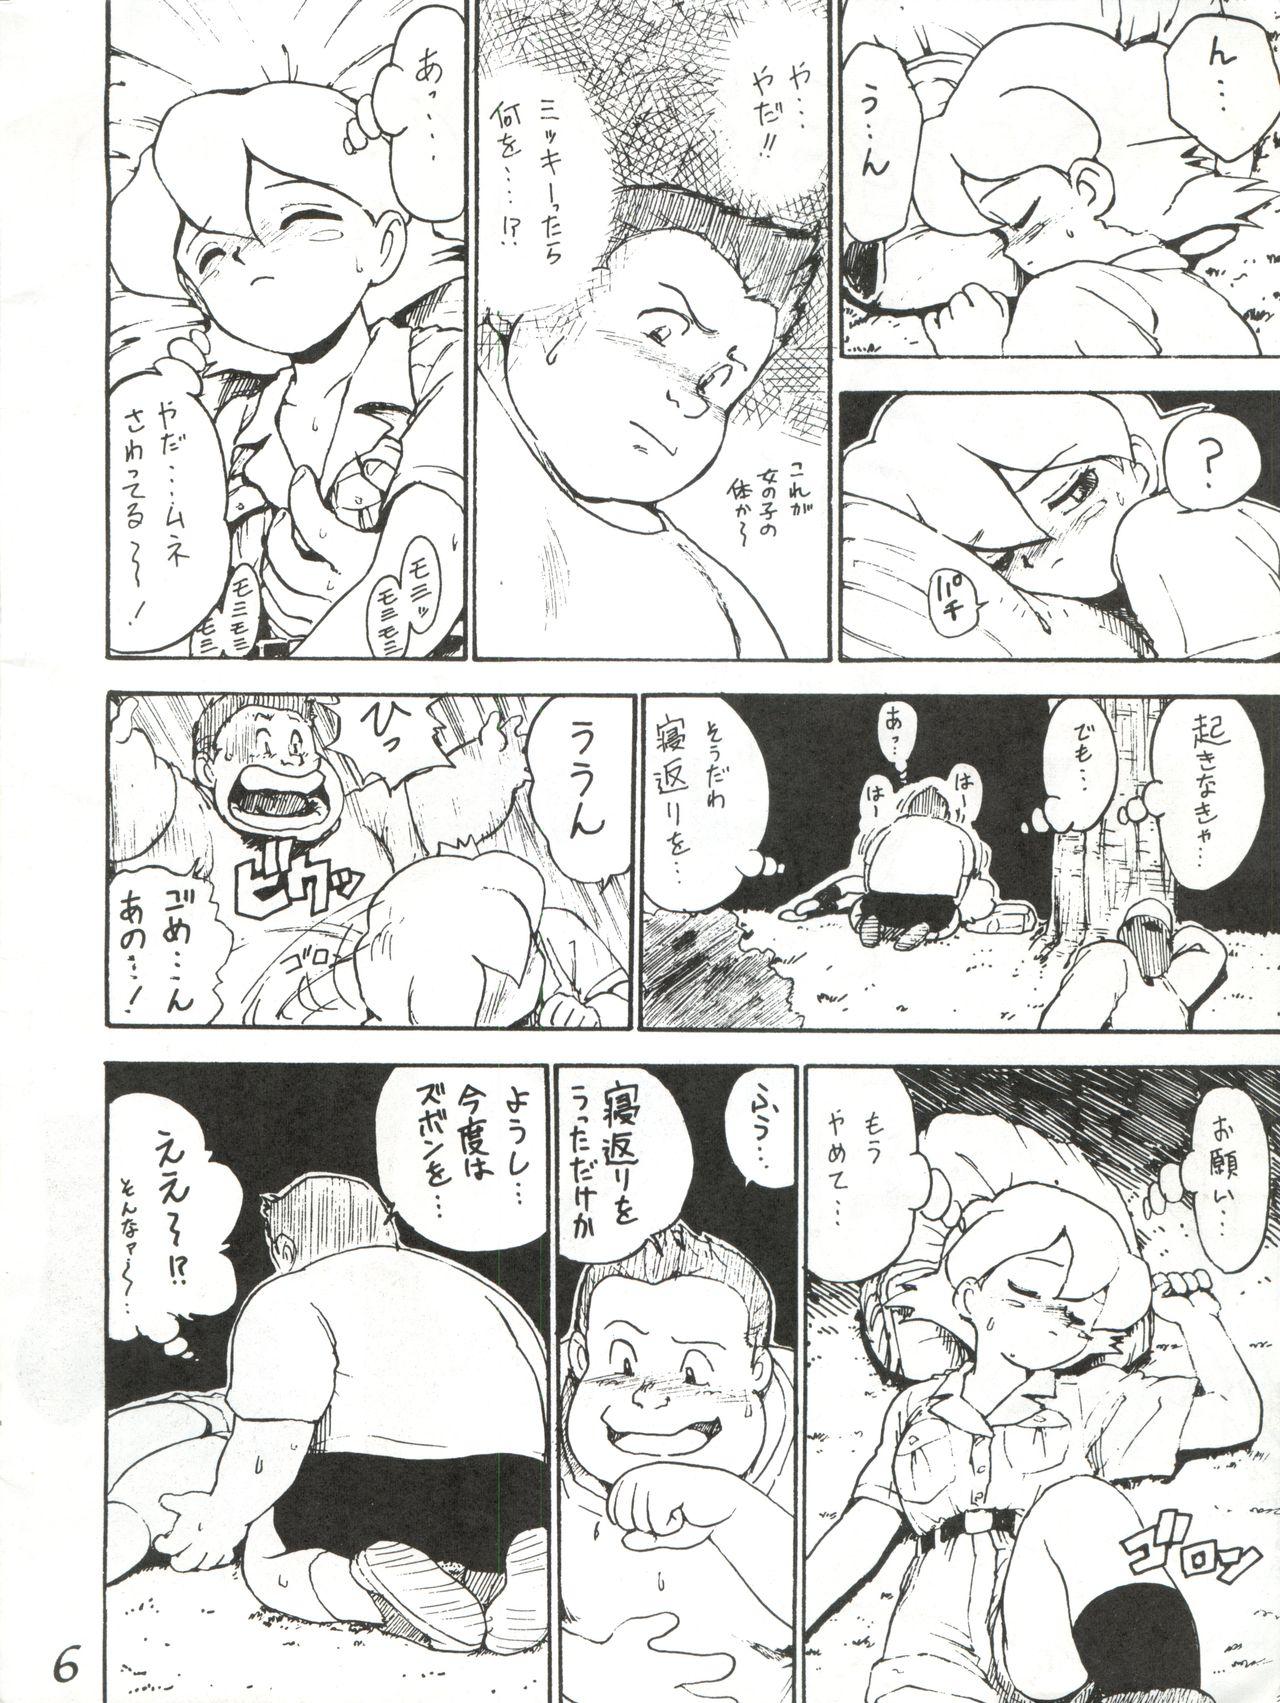 Latex Hachimitsu Otoko Ware - The bush baby Amaizo dango Huge Boobs - Page 6